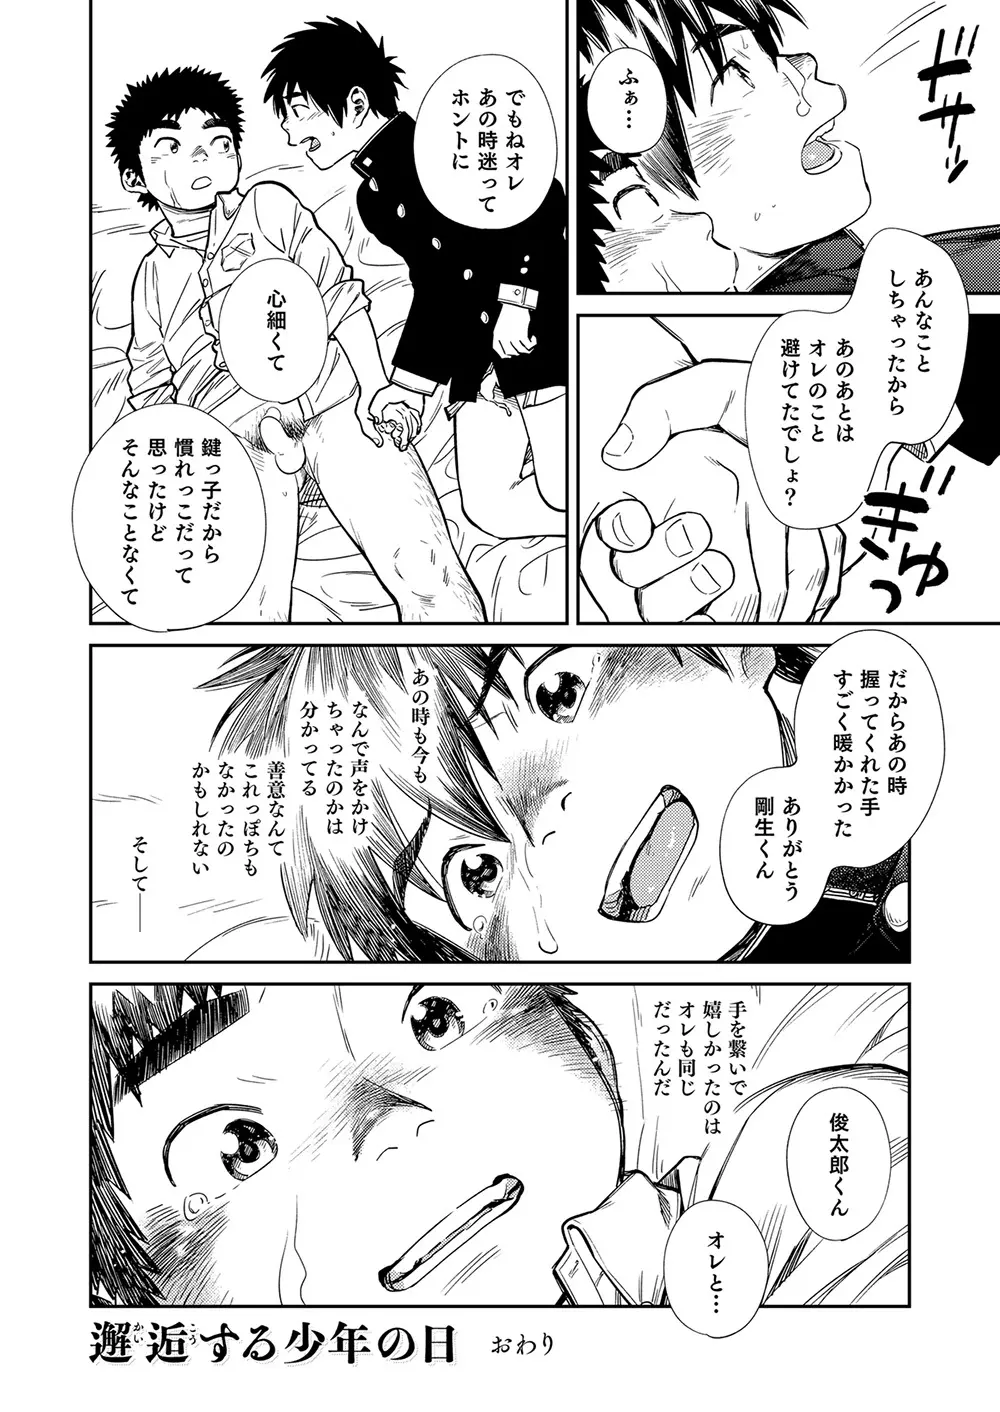 漫画少年ズーム vol.26 40ページ